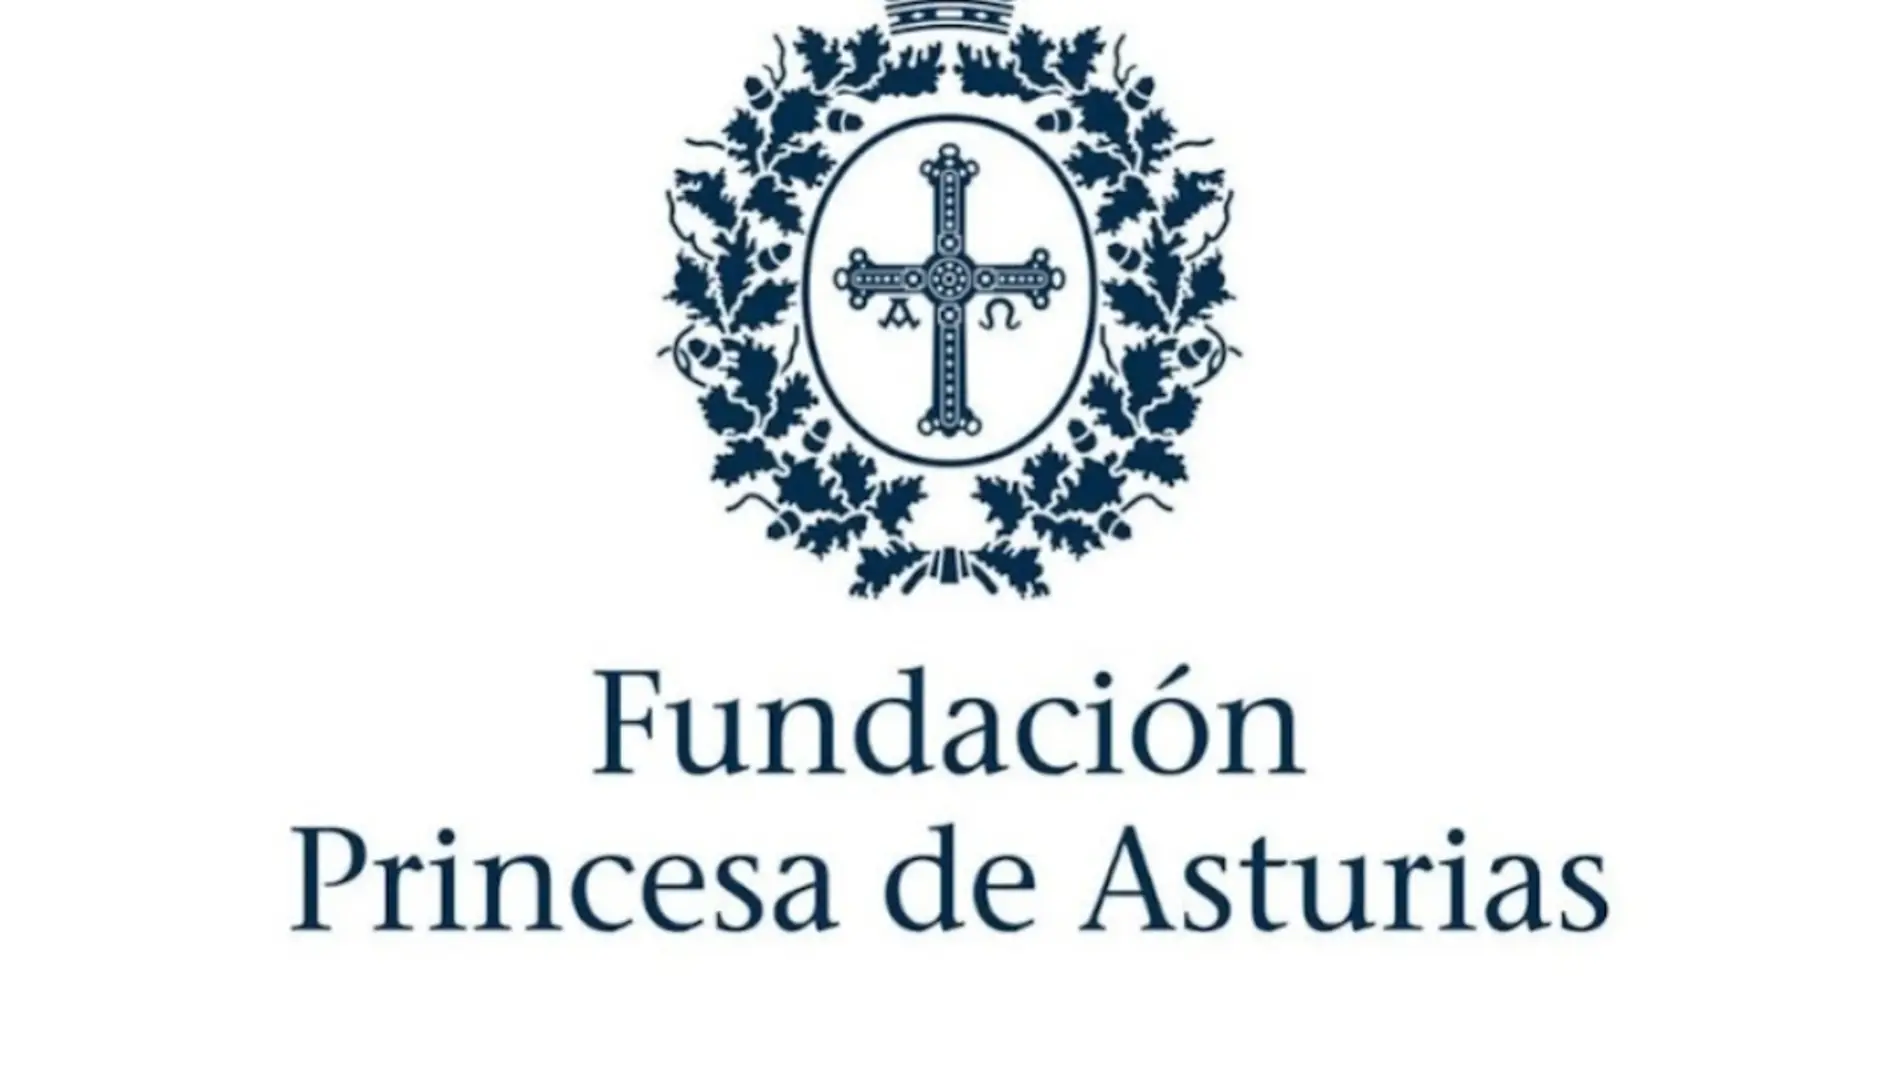 La economista asturiana Ana Isabel Fernández Álvarez será presidenta de la Fundación Princesa de Asturias